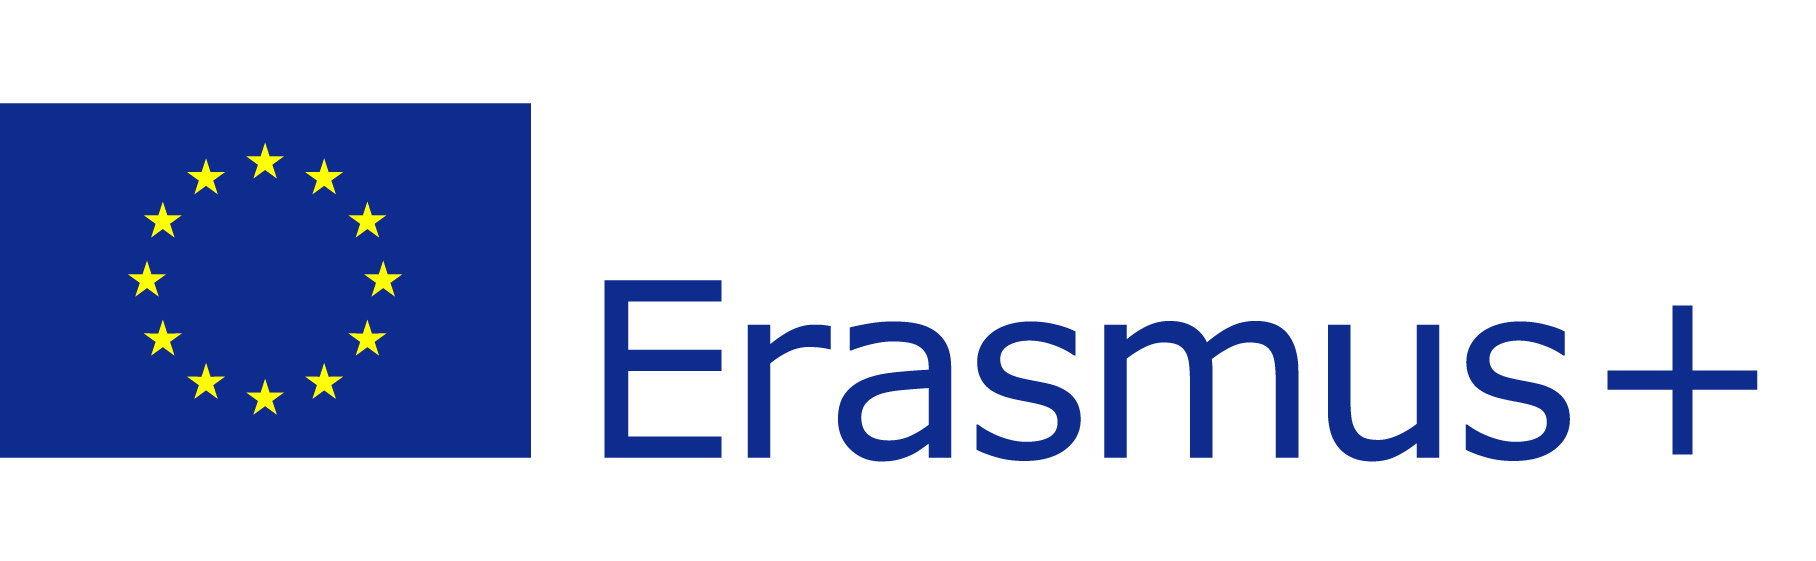 EU flag Erasmus vect POS rit